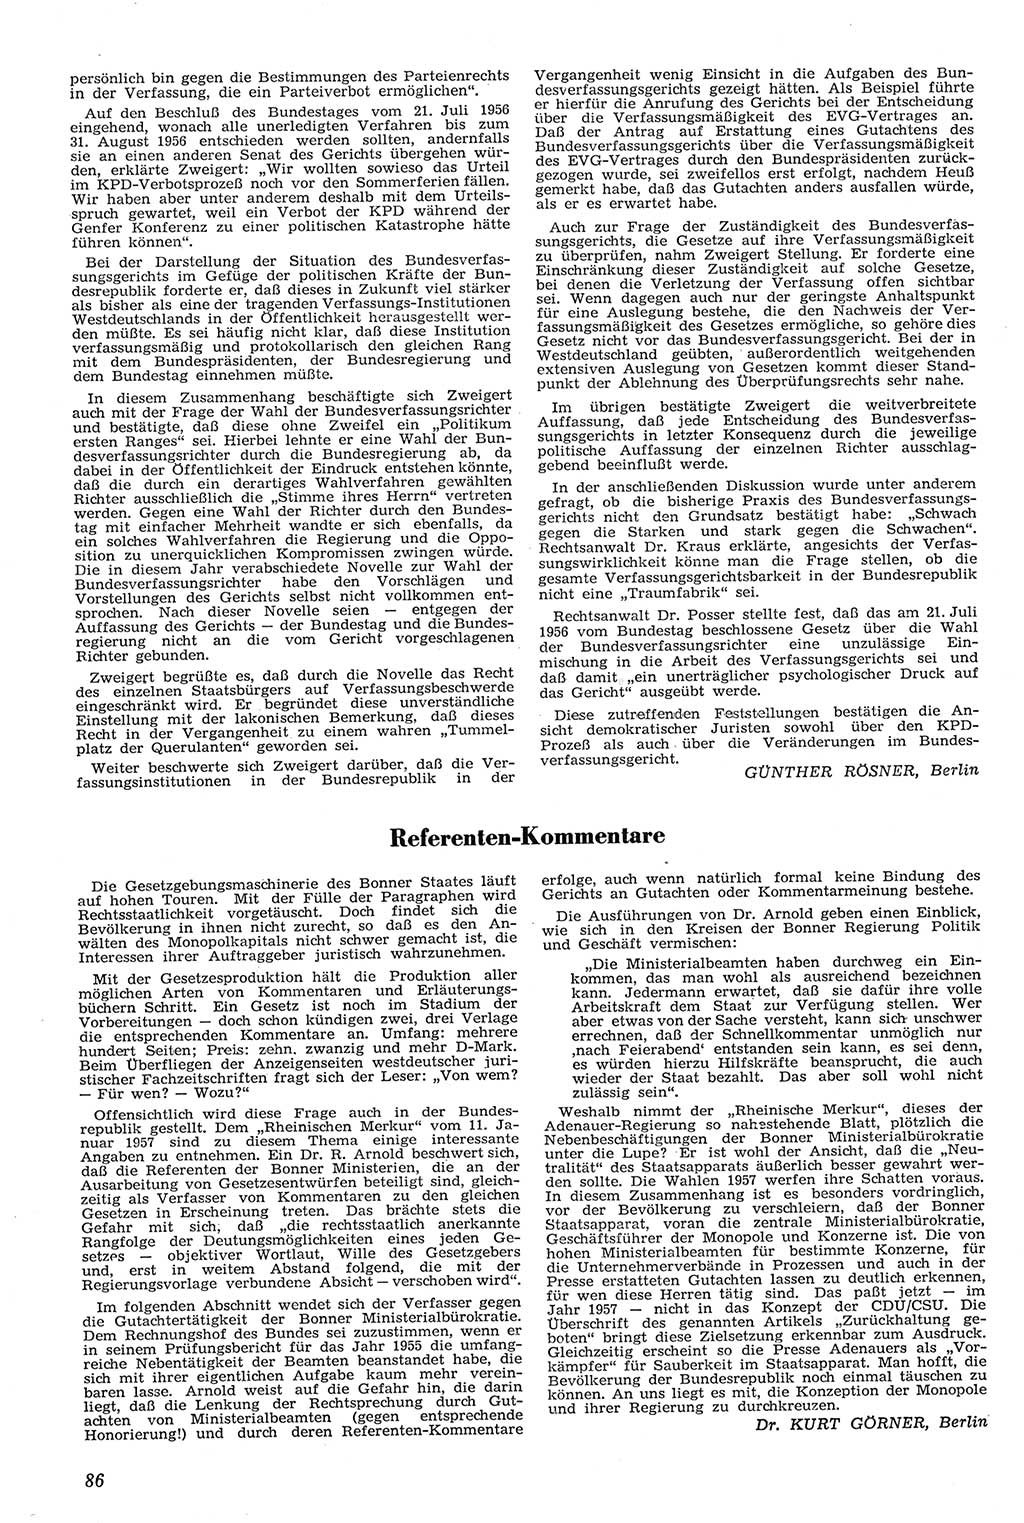 Neue Justiz (NJ), Zeitschrift für Recht und Rechtswissenschaft [Deutsche Demokratische Republik (DDR)], 11. Jahrgang 1957, Seite 86 (NJ DDR 1957, S. 86)